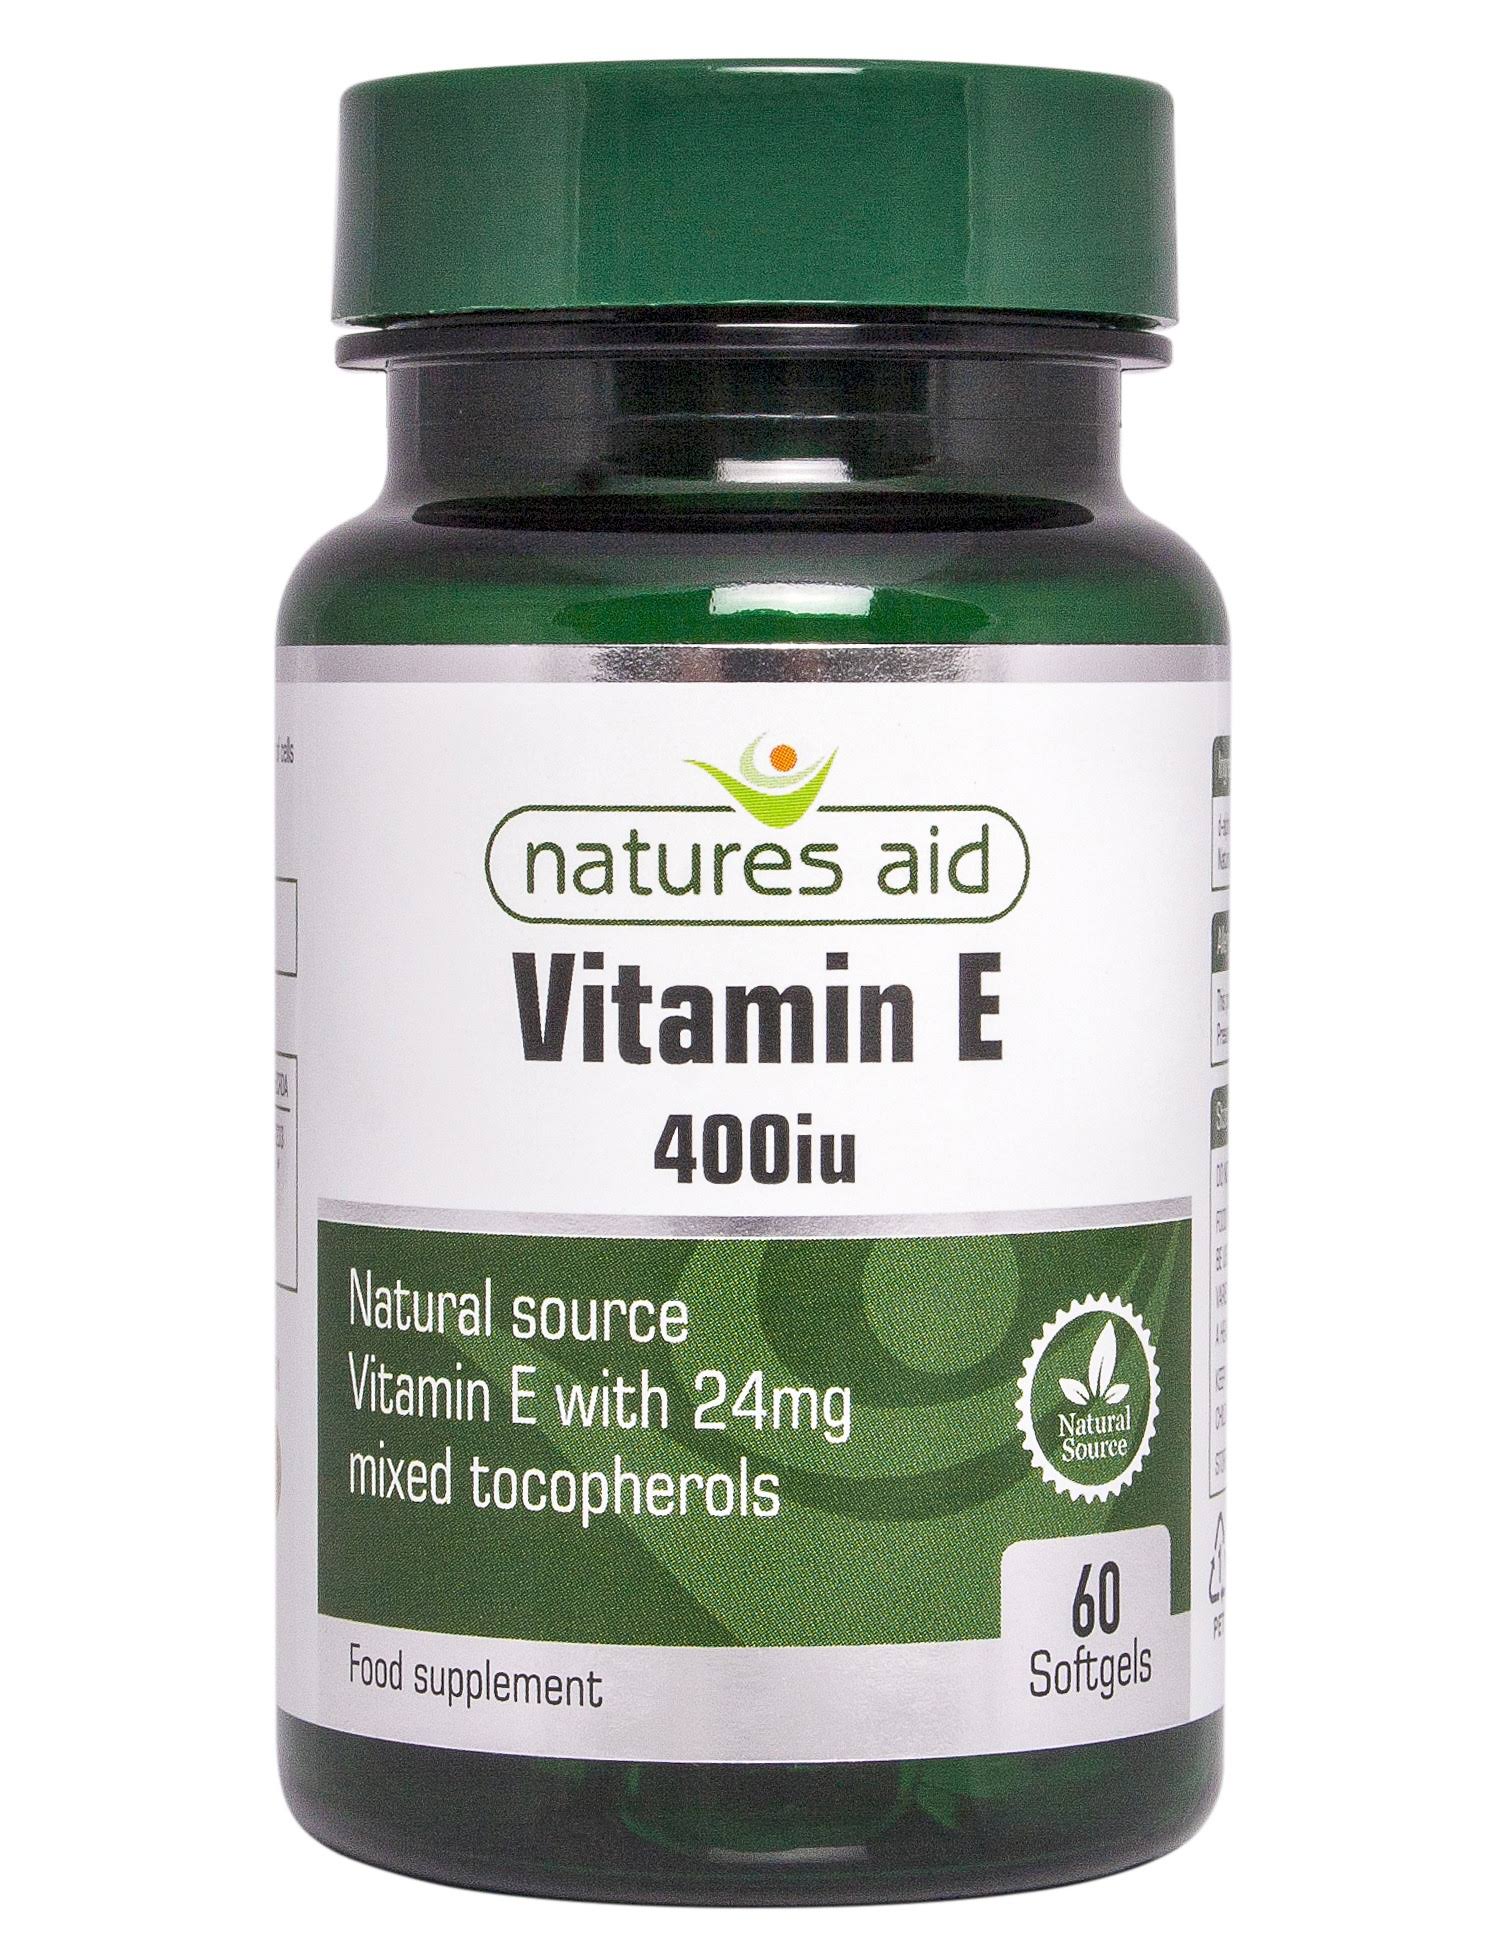 Natures Aid Vitamin E Food Supplement - 60 Capsules